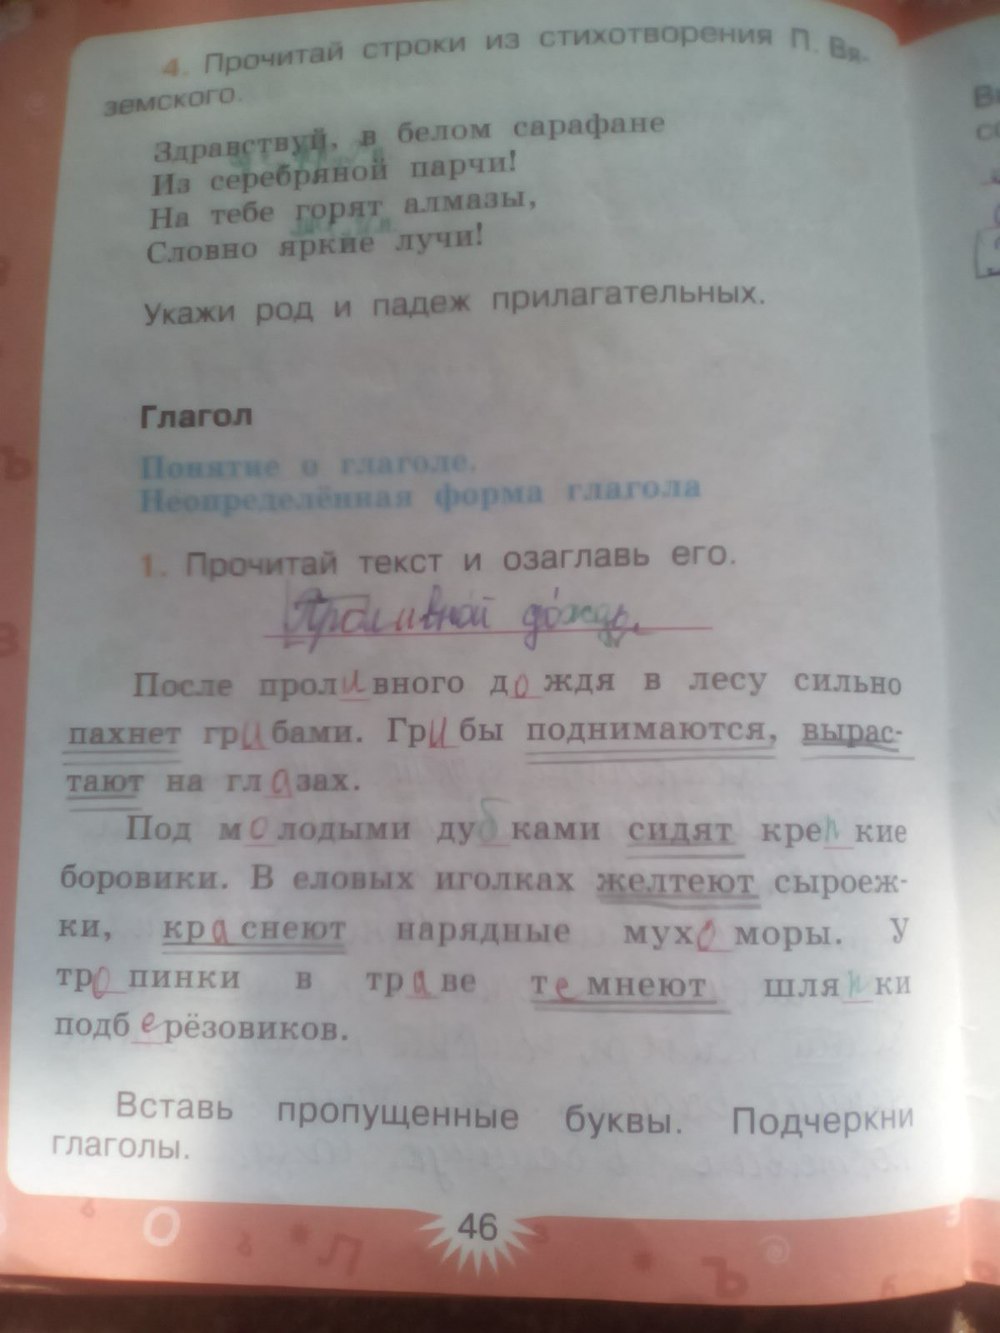 Русский язык 3 класс стр 77